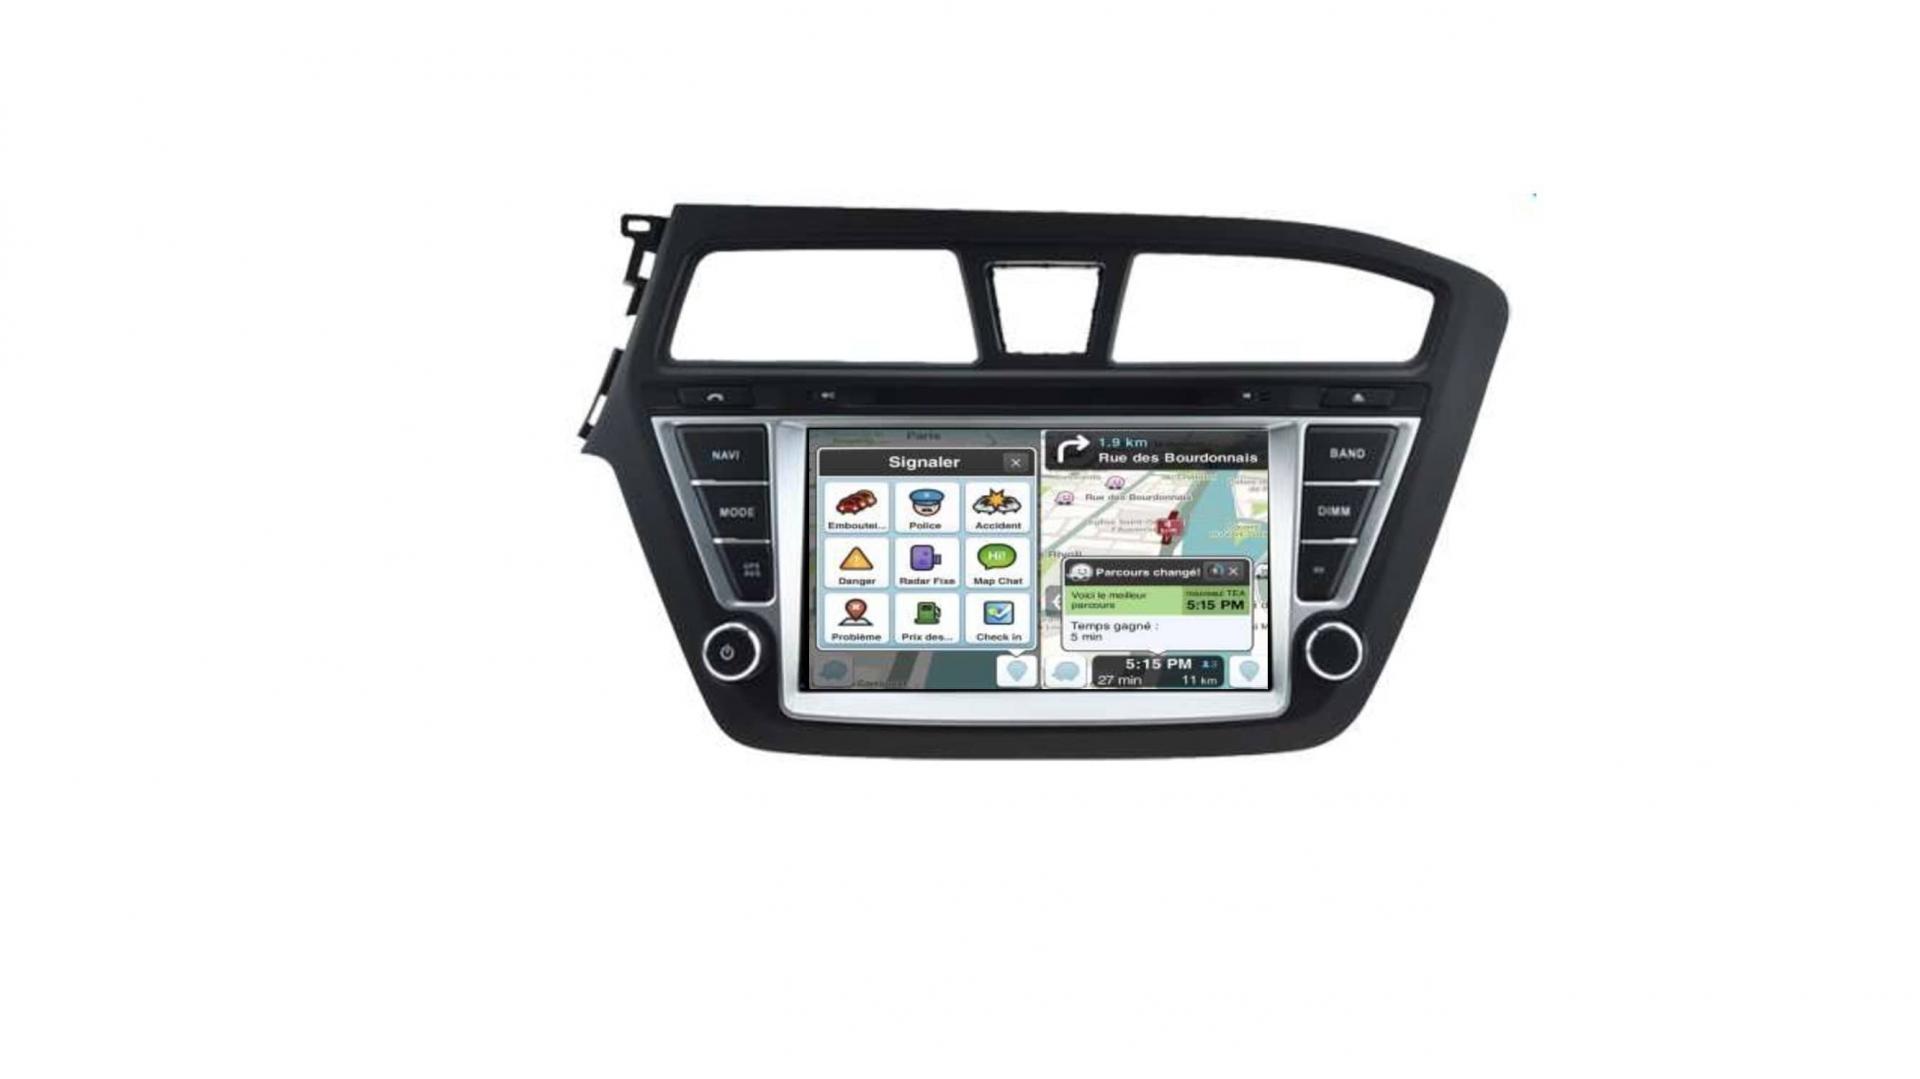 Autoradio androi d auto carplay gps bluetooth hyundai i20 depuis 2015 4